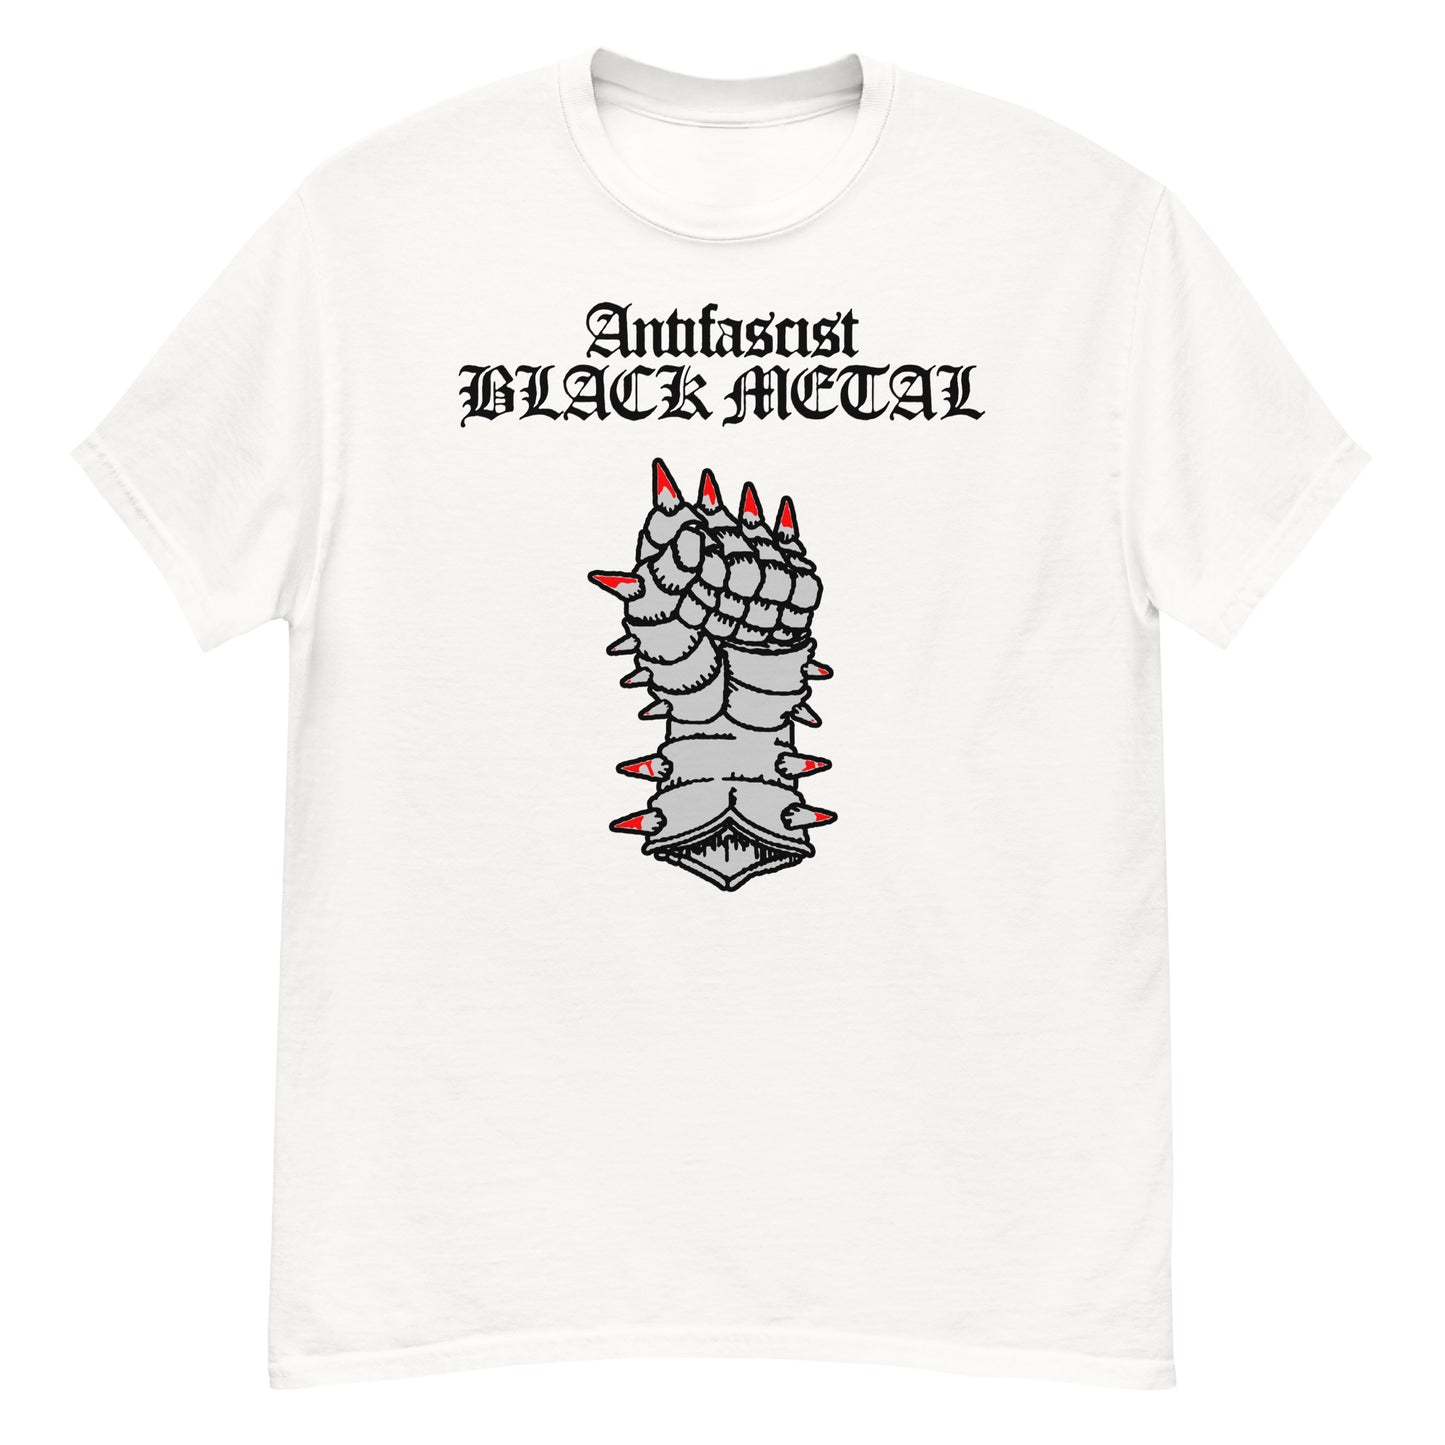 Antifascist Black Metal T-Shirt